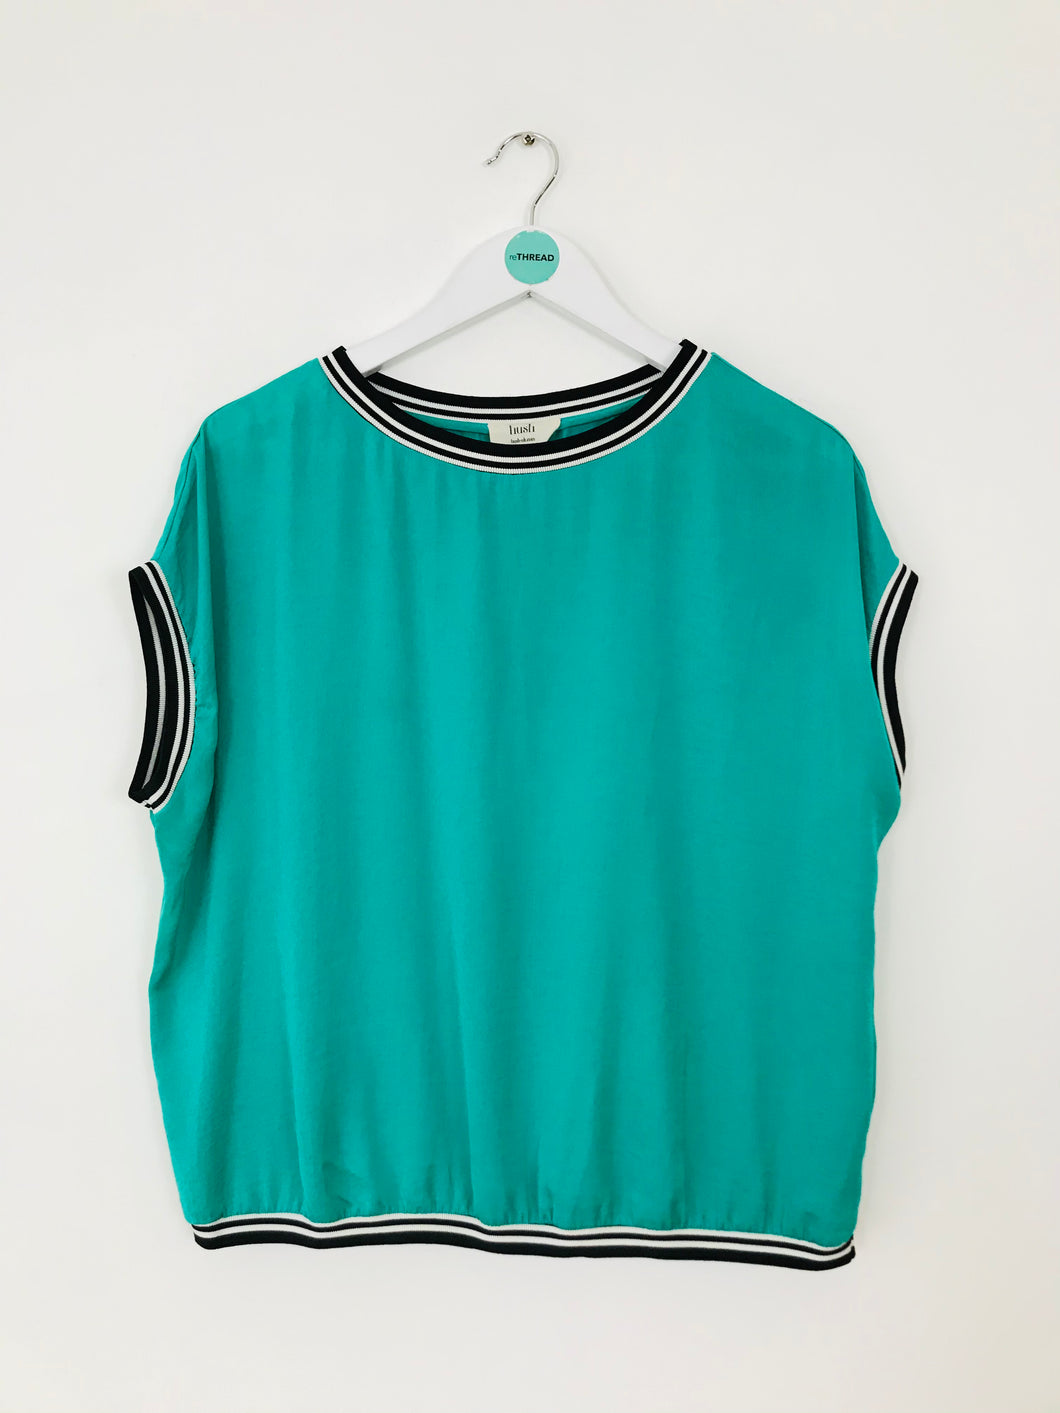 Hush Women’s Oversized Sleeveless Tshirt | UK14 | Green